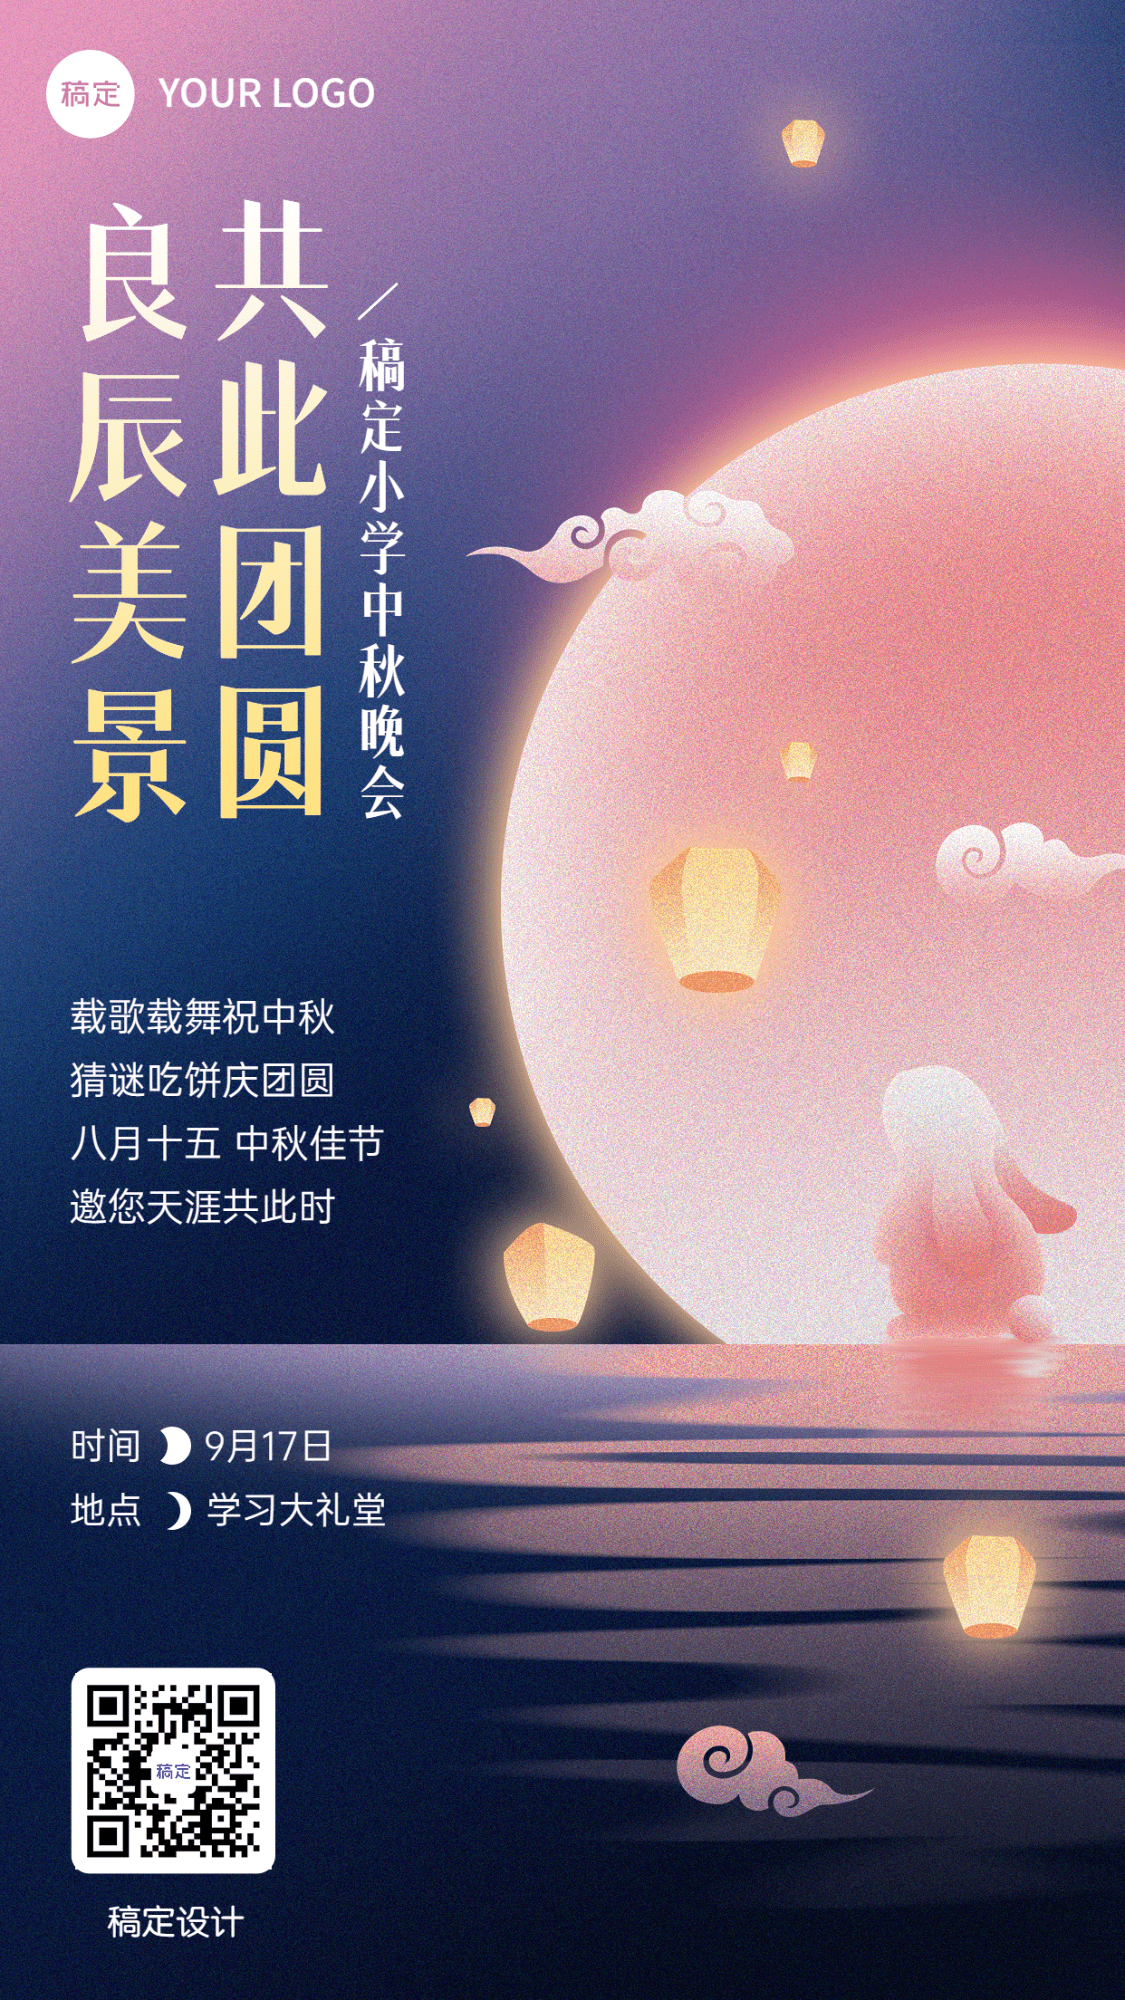 中秋节晚会活动宣传噪点插画手机海报